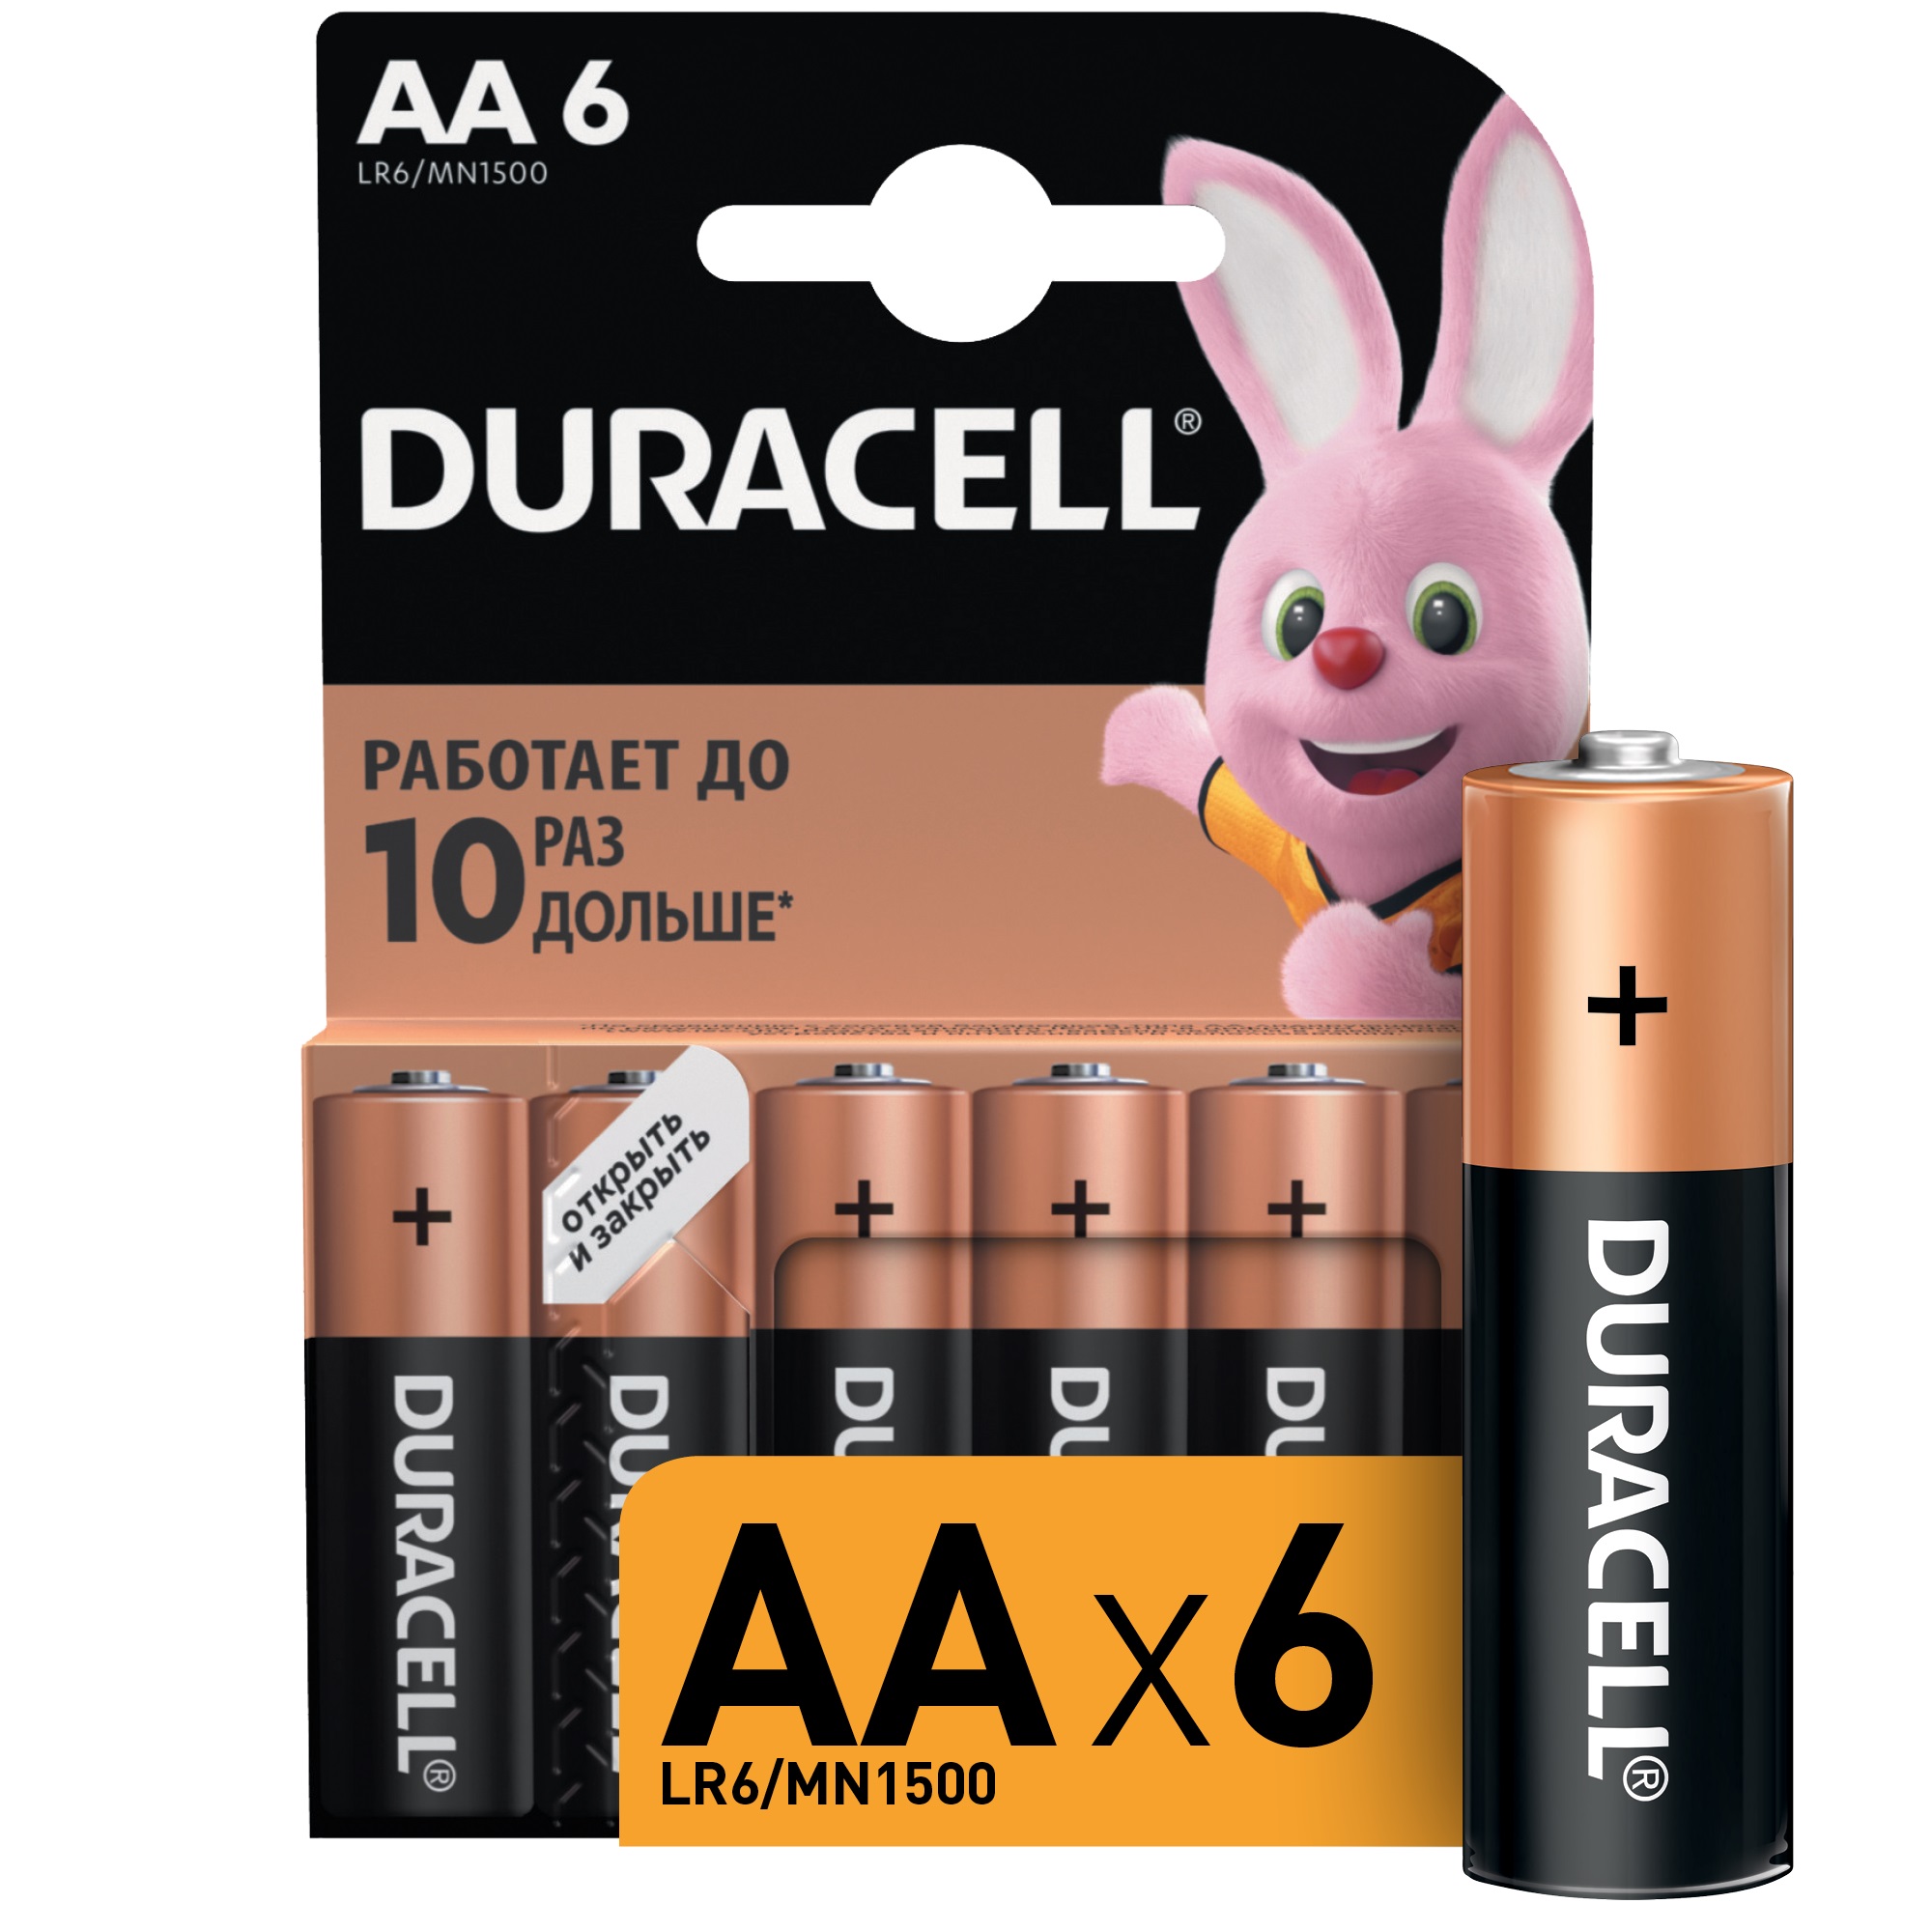 Батарейка Duracell Basic LR6 6 шт батарейка r20 duracell 2 шт duracell арт 11037